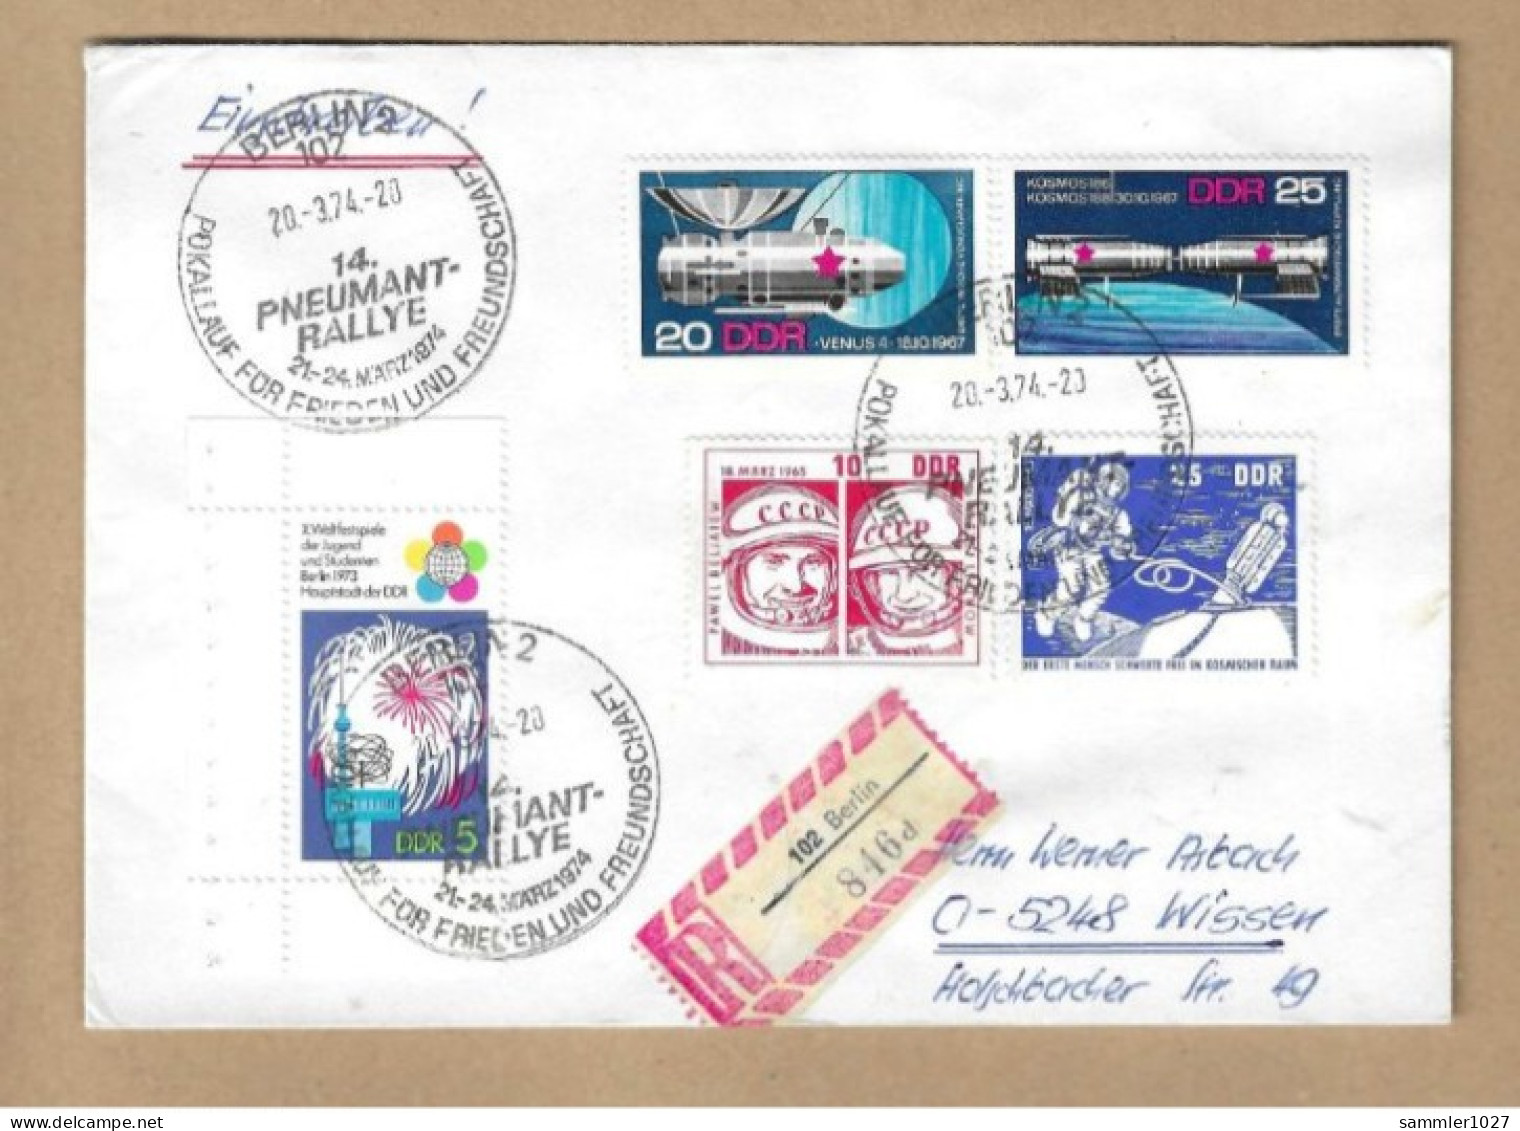 Los Vom 05.05  Einschreiben-Briefumschlöag Aus Berlin 1974 Pneumat Rallye - Briefe U. Dokumente